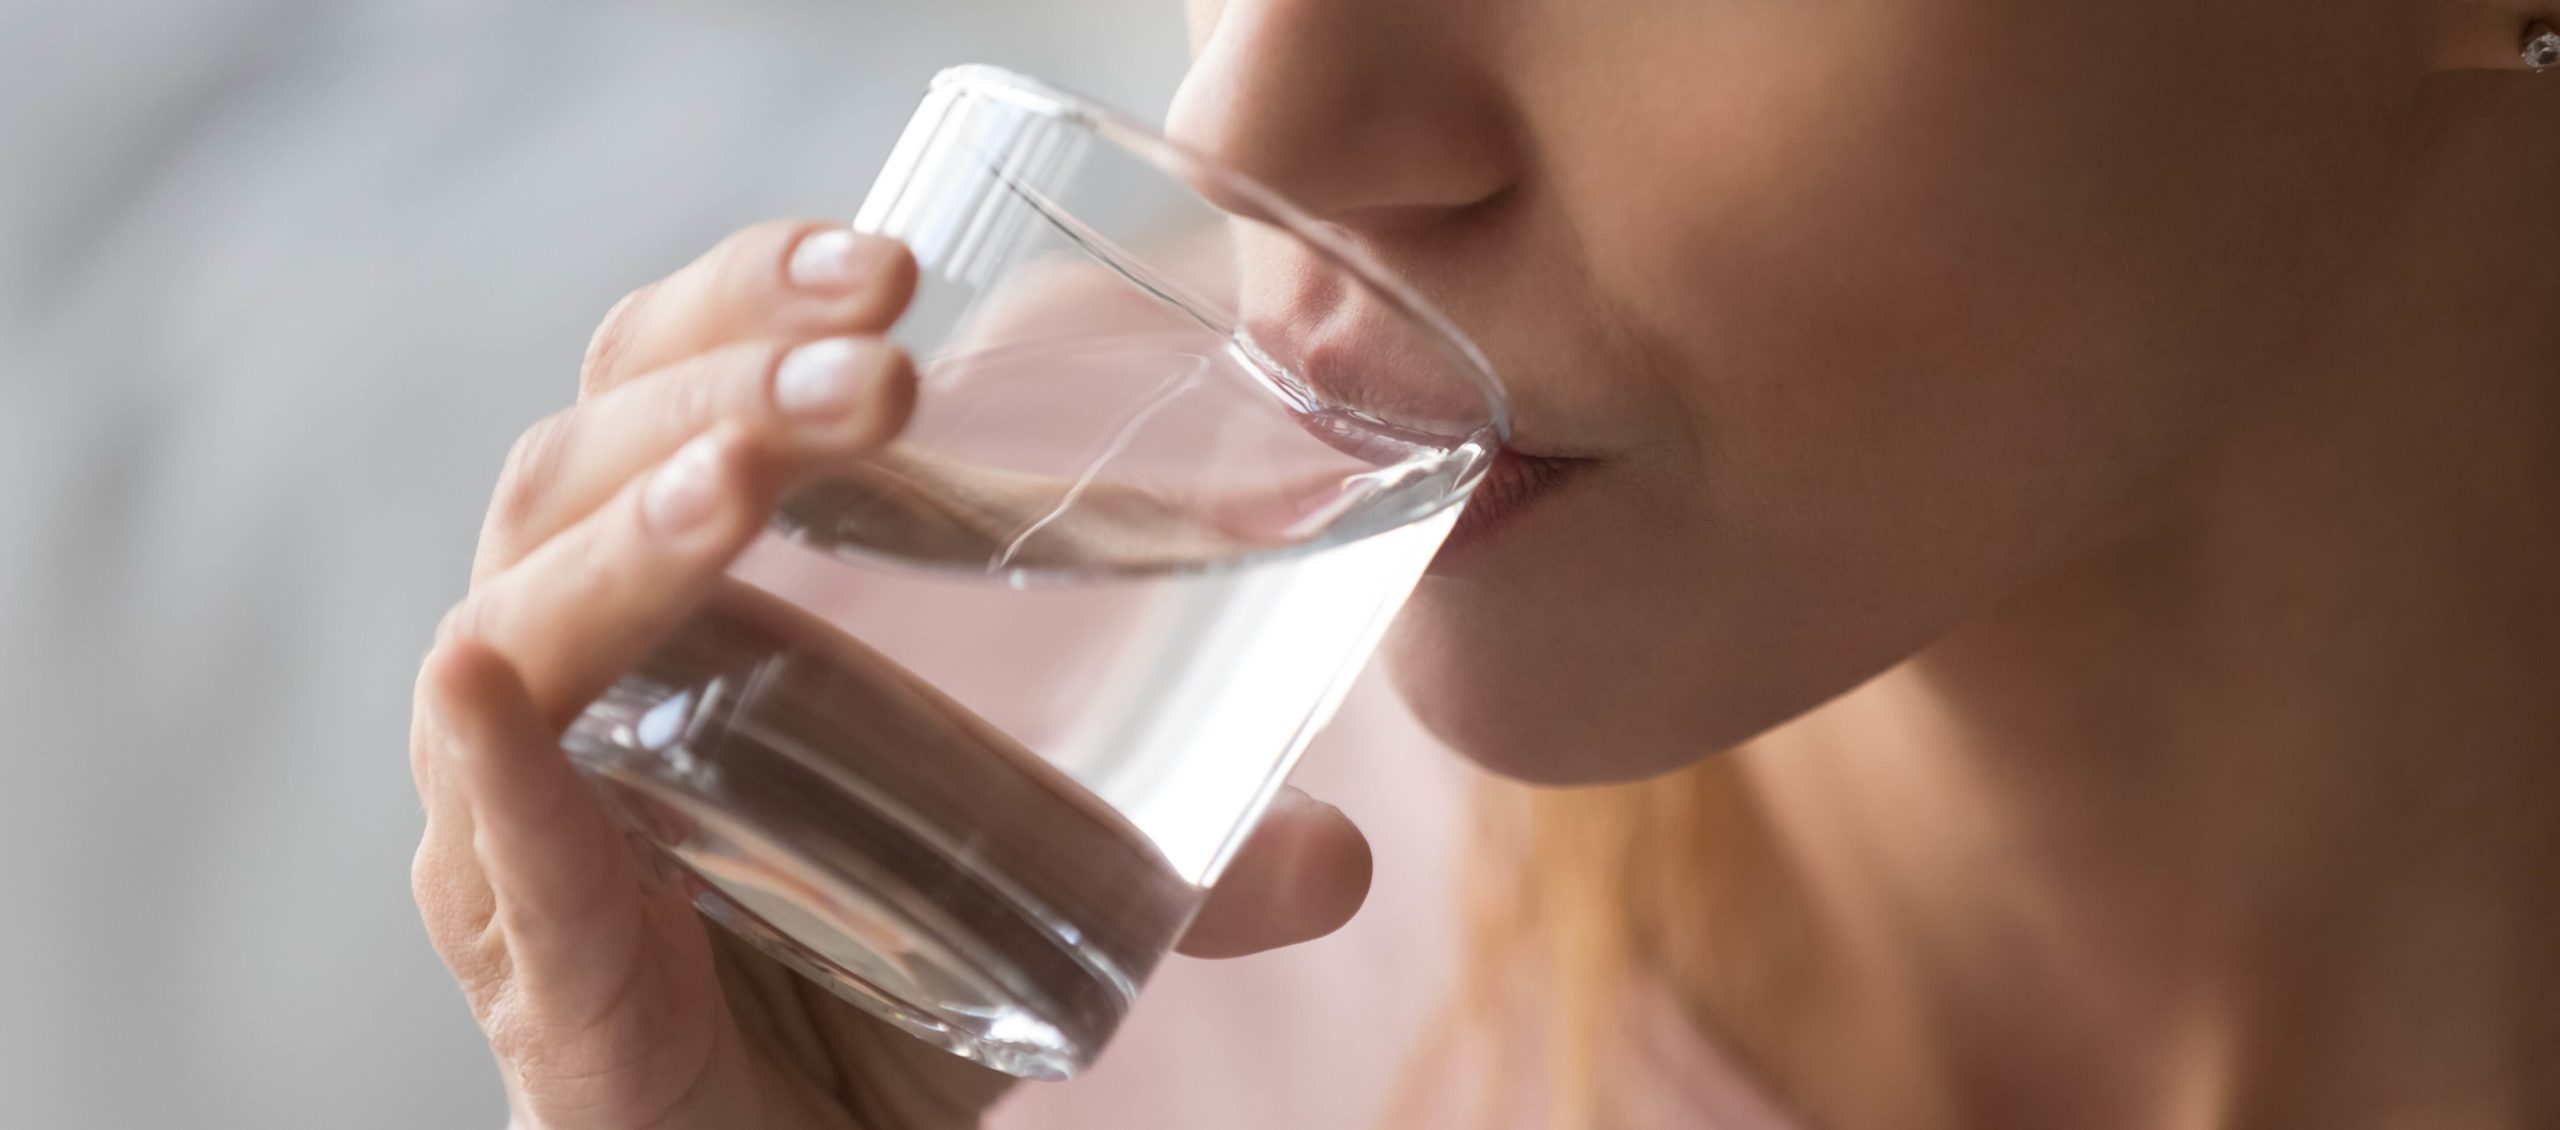 bere molta acqua e uno dei rimedi naturali per la cistite